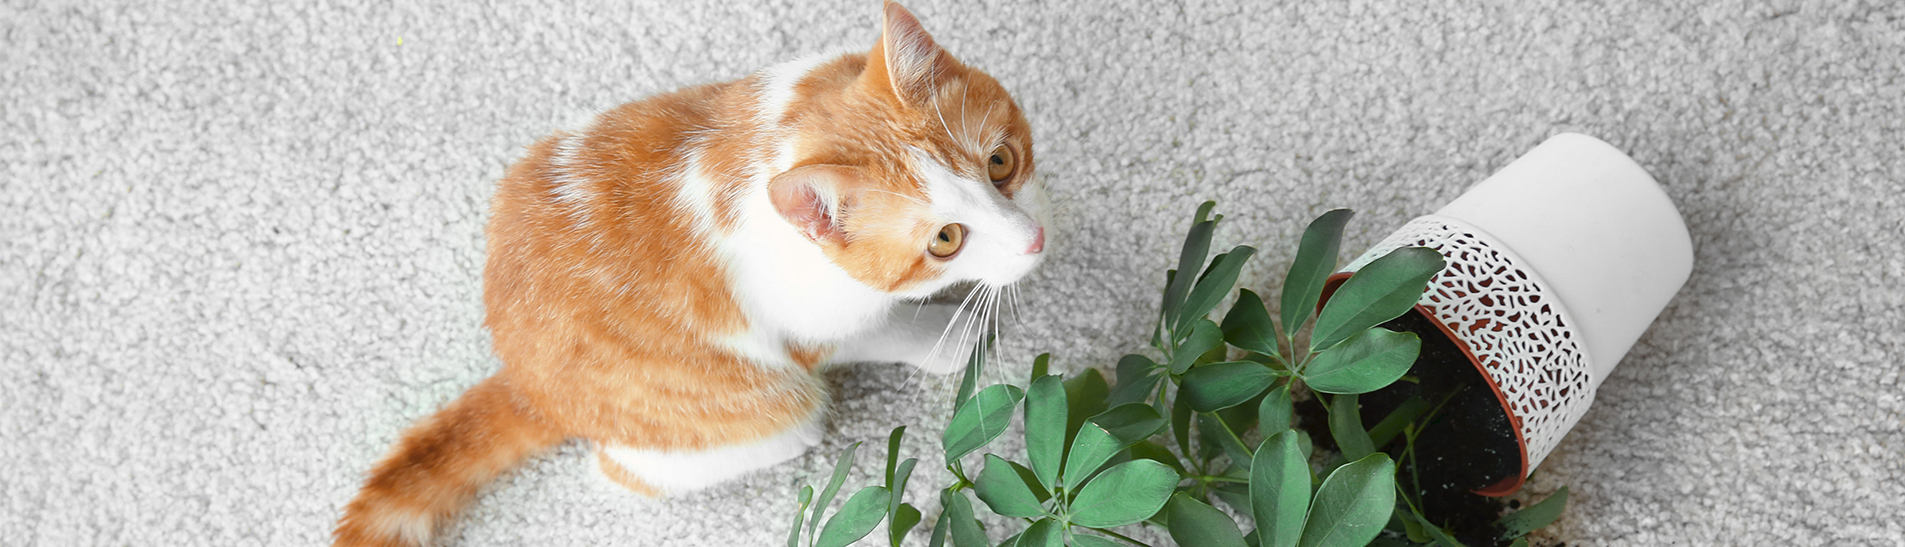 chat et plante d'intérieur renversée